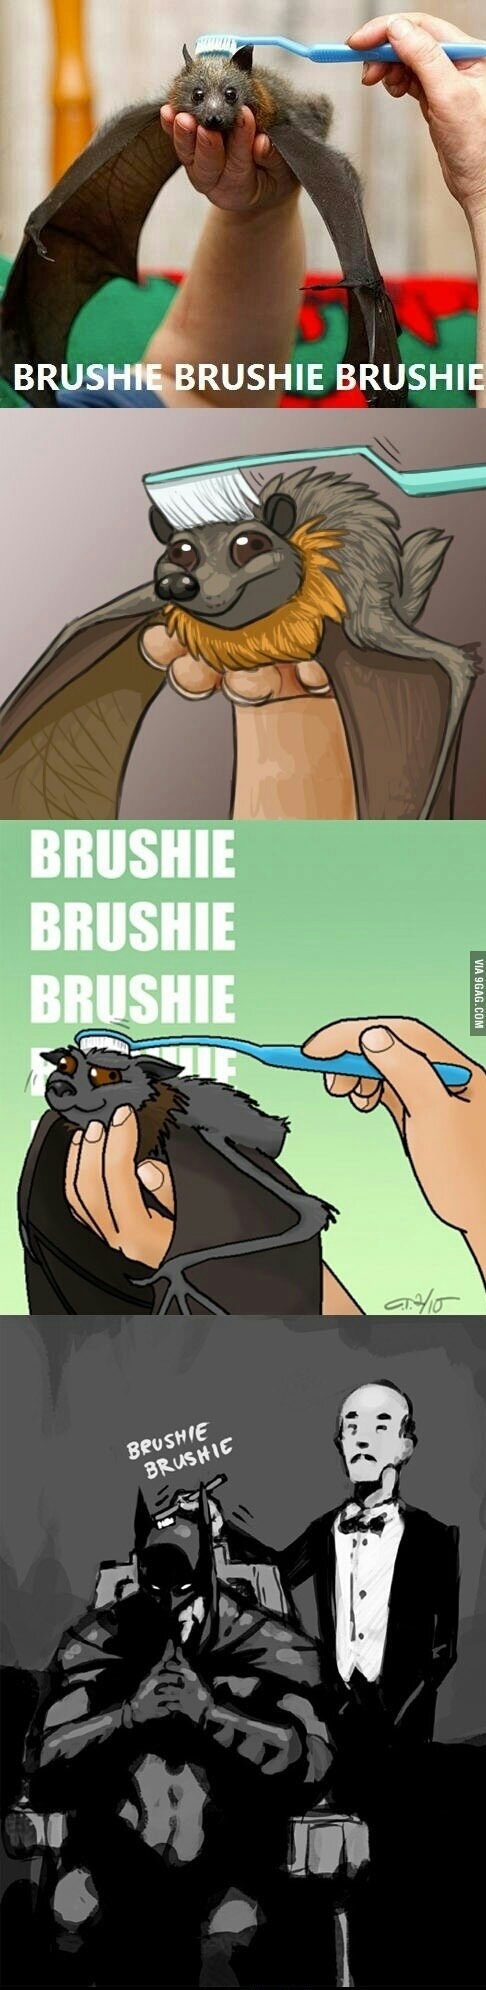 Brushie, brushie... - meme